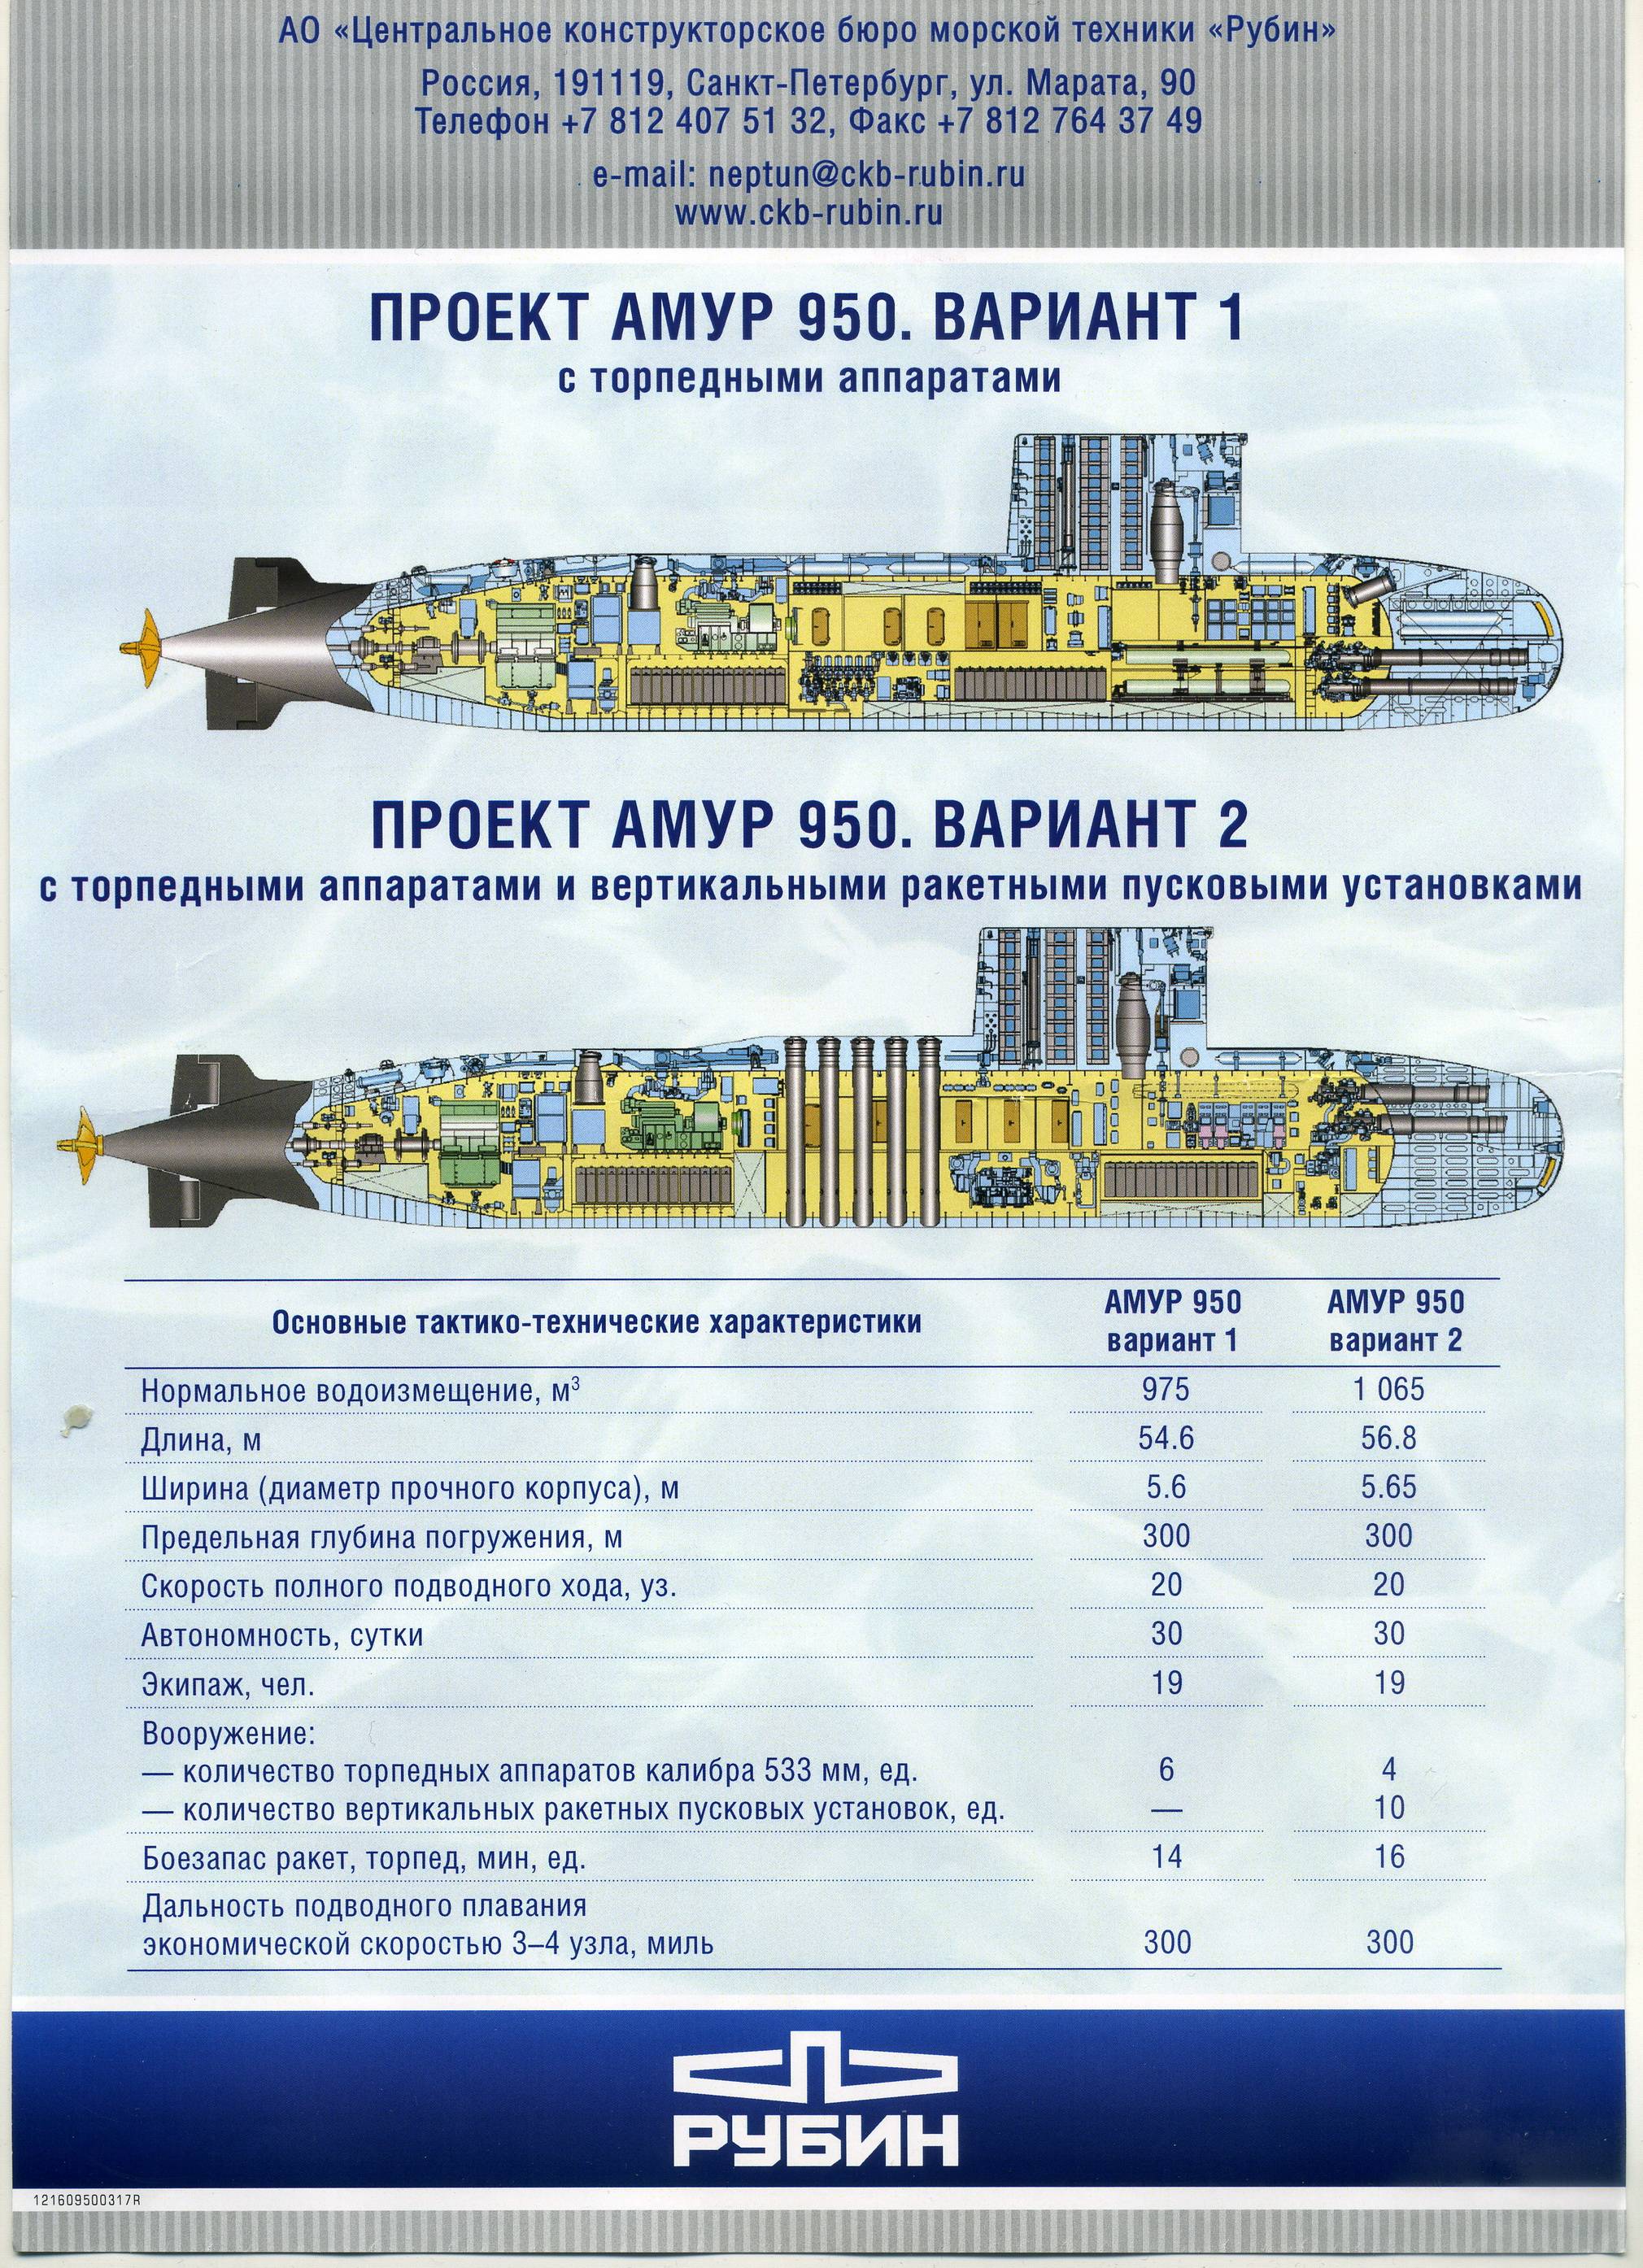 Амурский судостроительный завод: подводное кораблестроение — бизнес россии